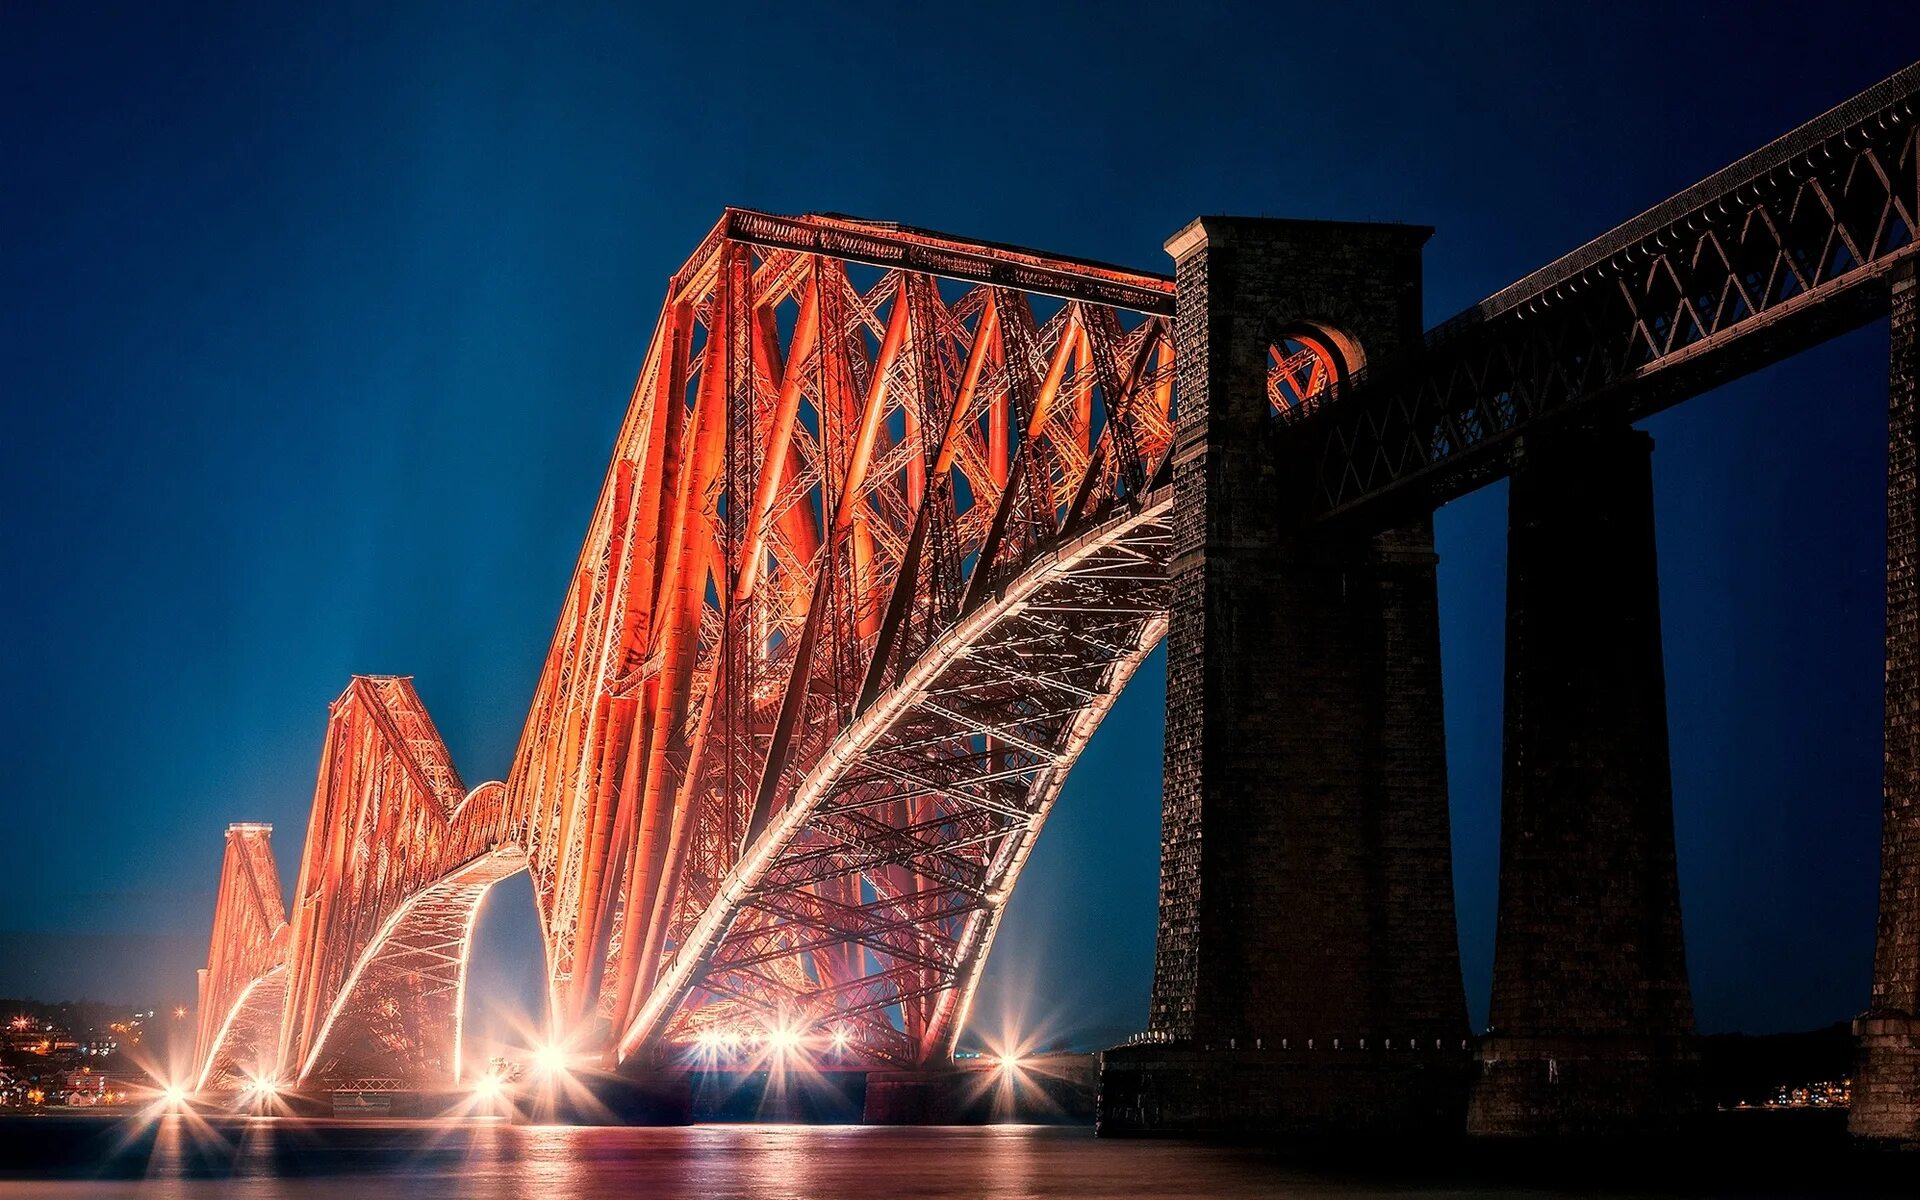 Бридж. Мост Форт-бридж Эдинбург. Фортский мост в Шотландии. Мост Форт-бридж, Эдинбург, Шотландия. Мост «Форт-роуд-бридж» в Эдинбурге.